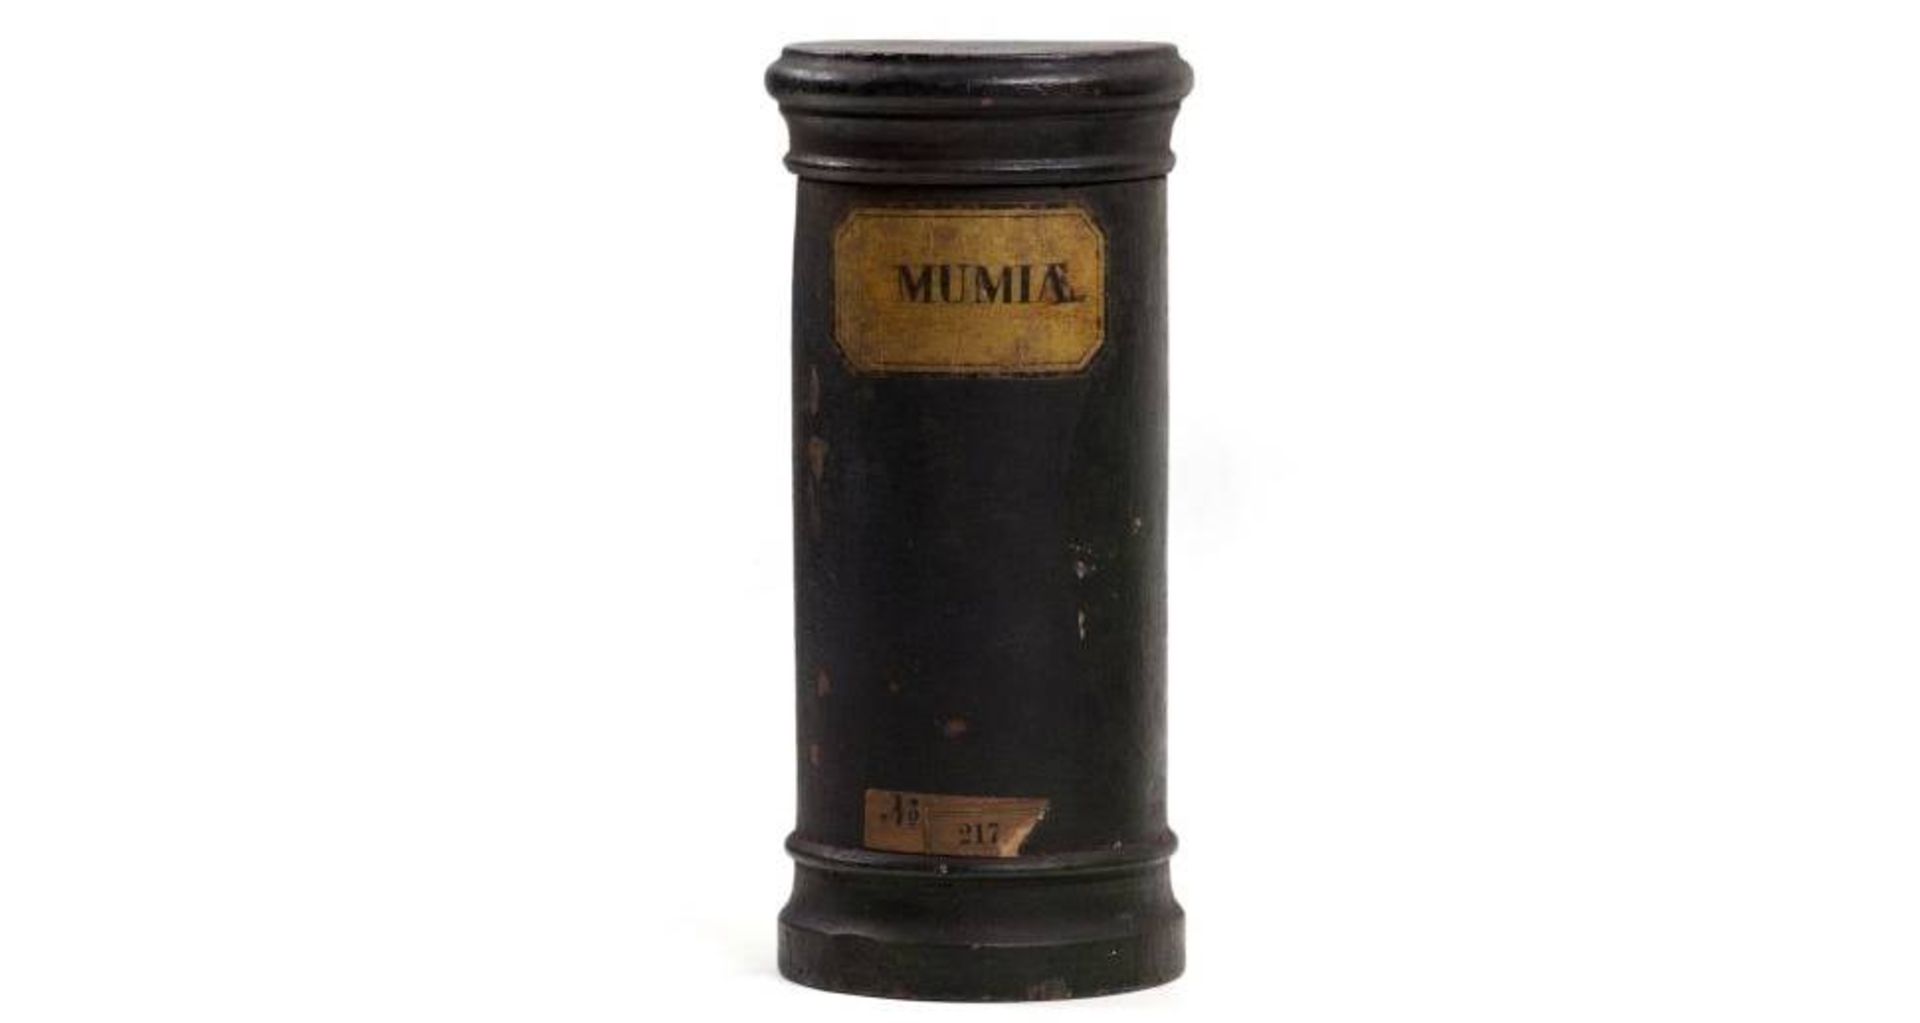 ظرف مومیا / mumia